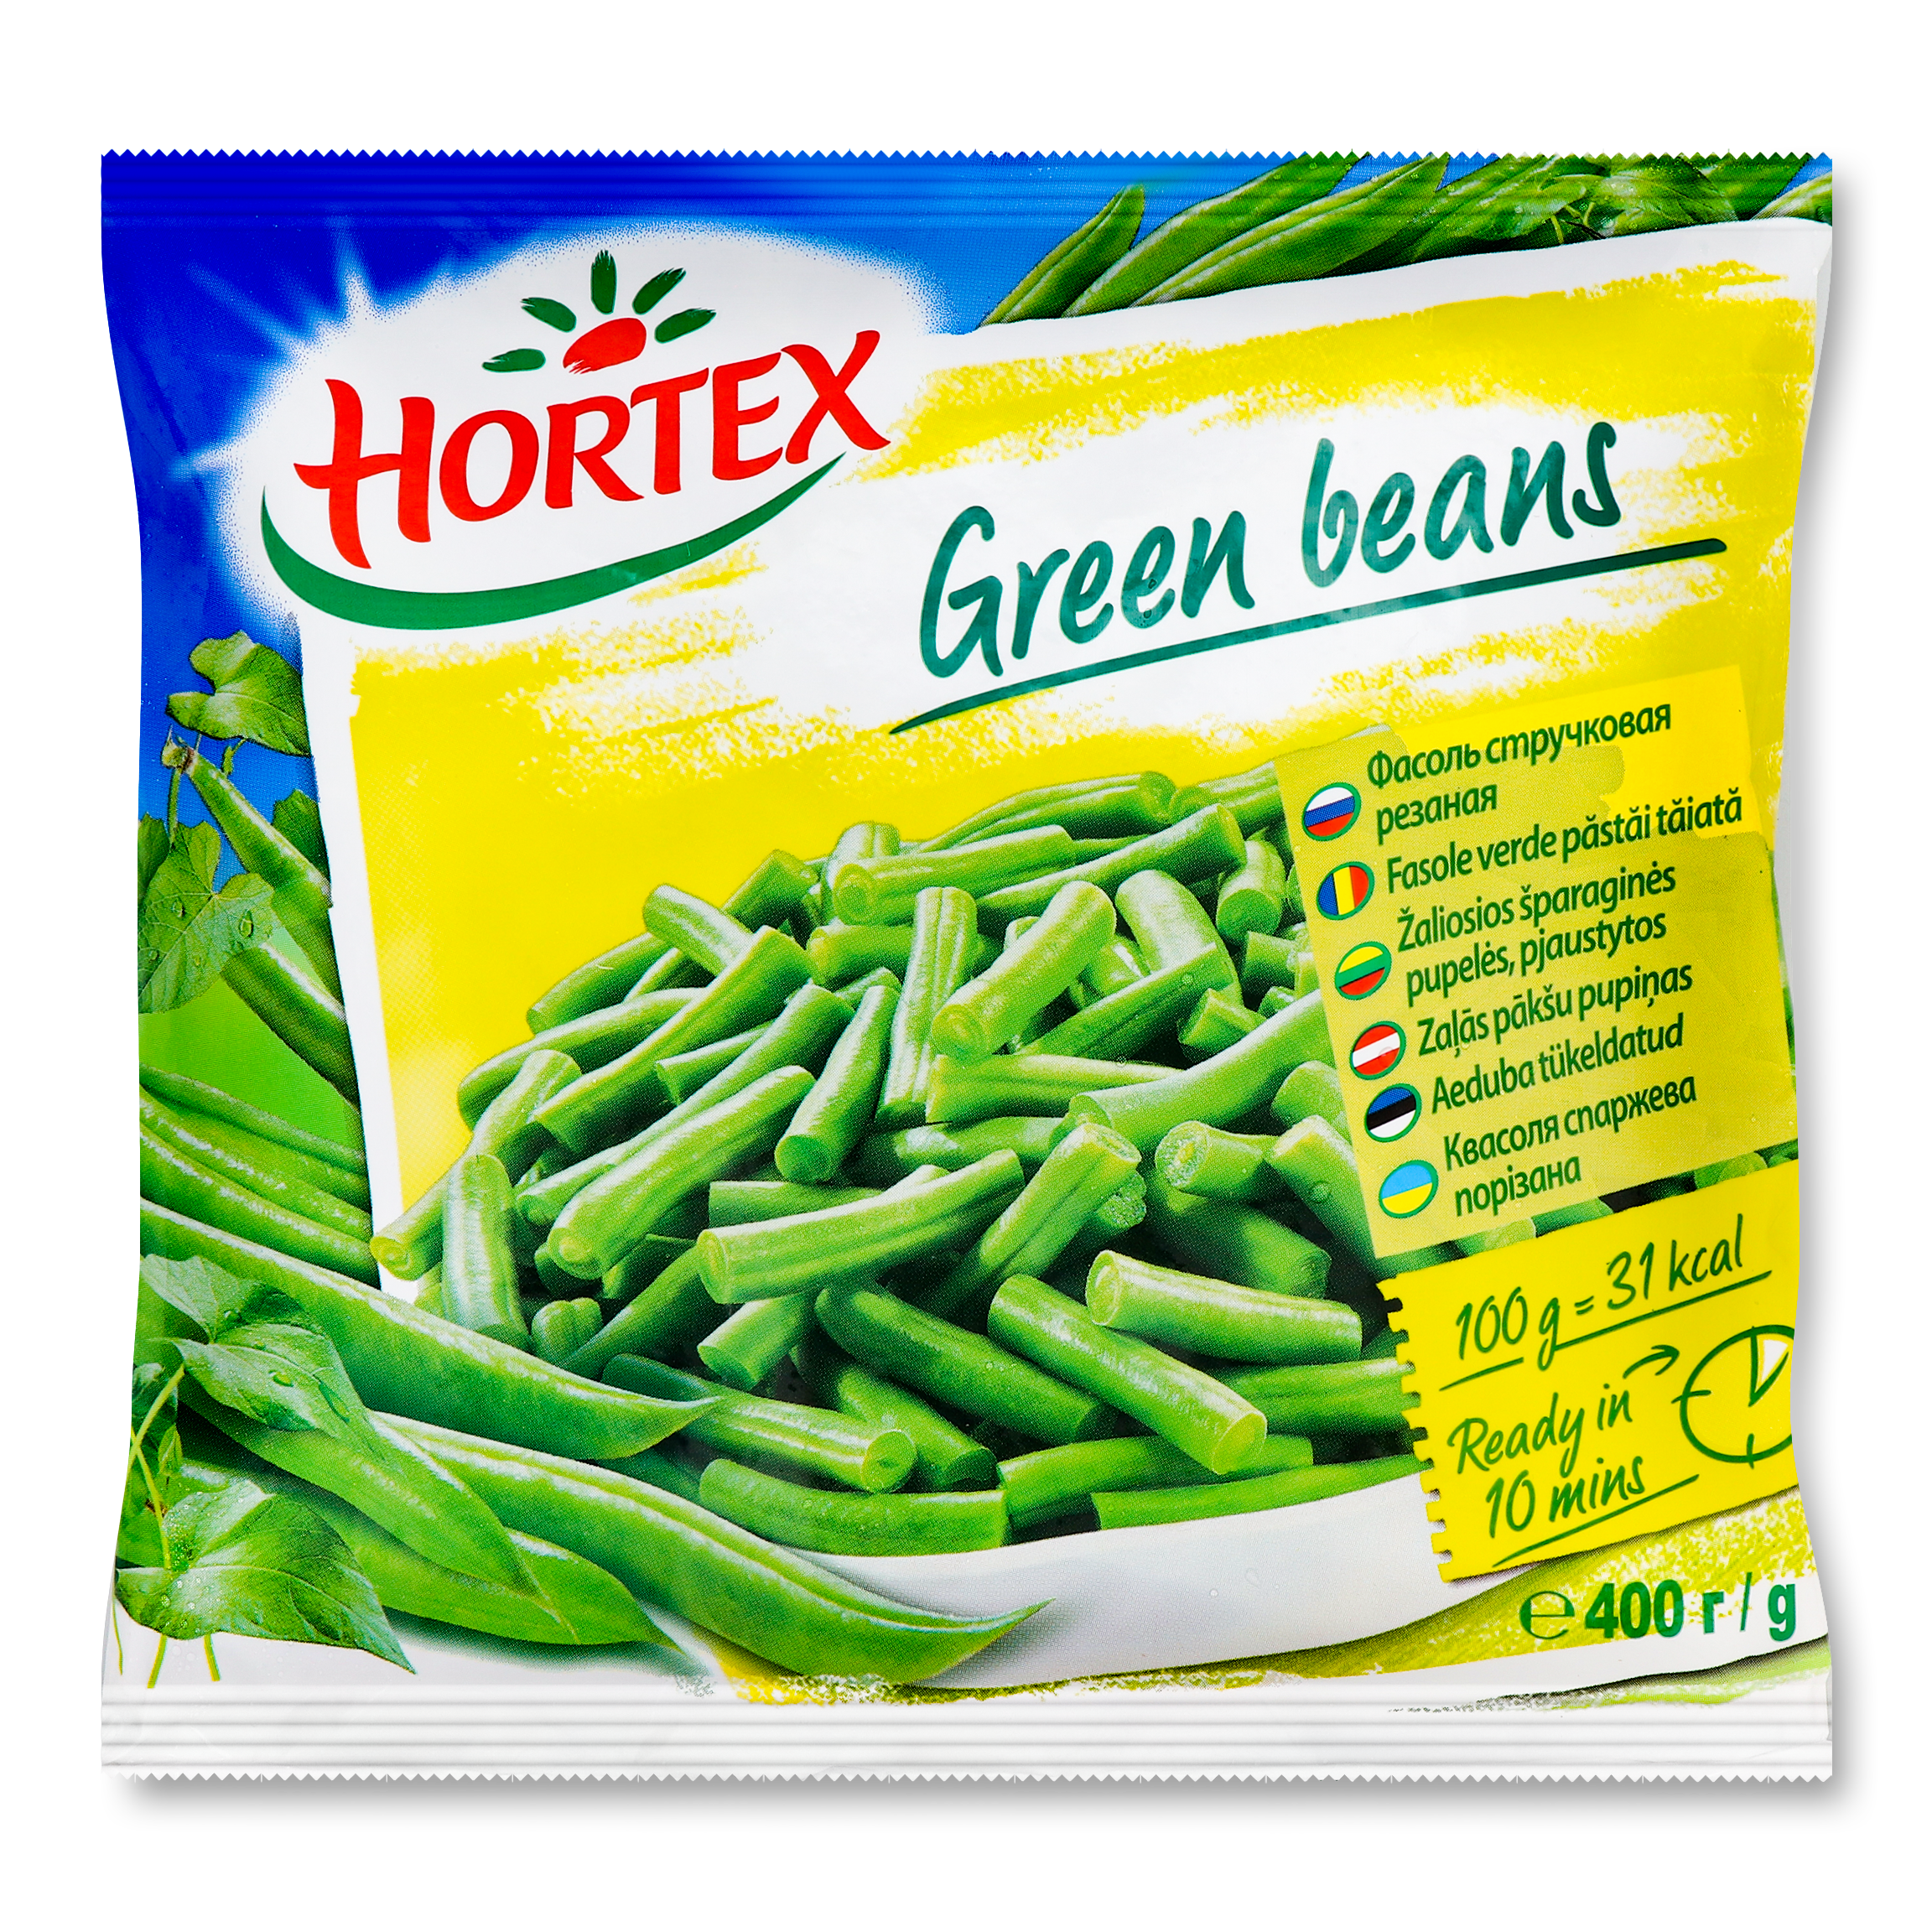 Hortex cutted grean beans 400g